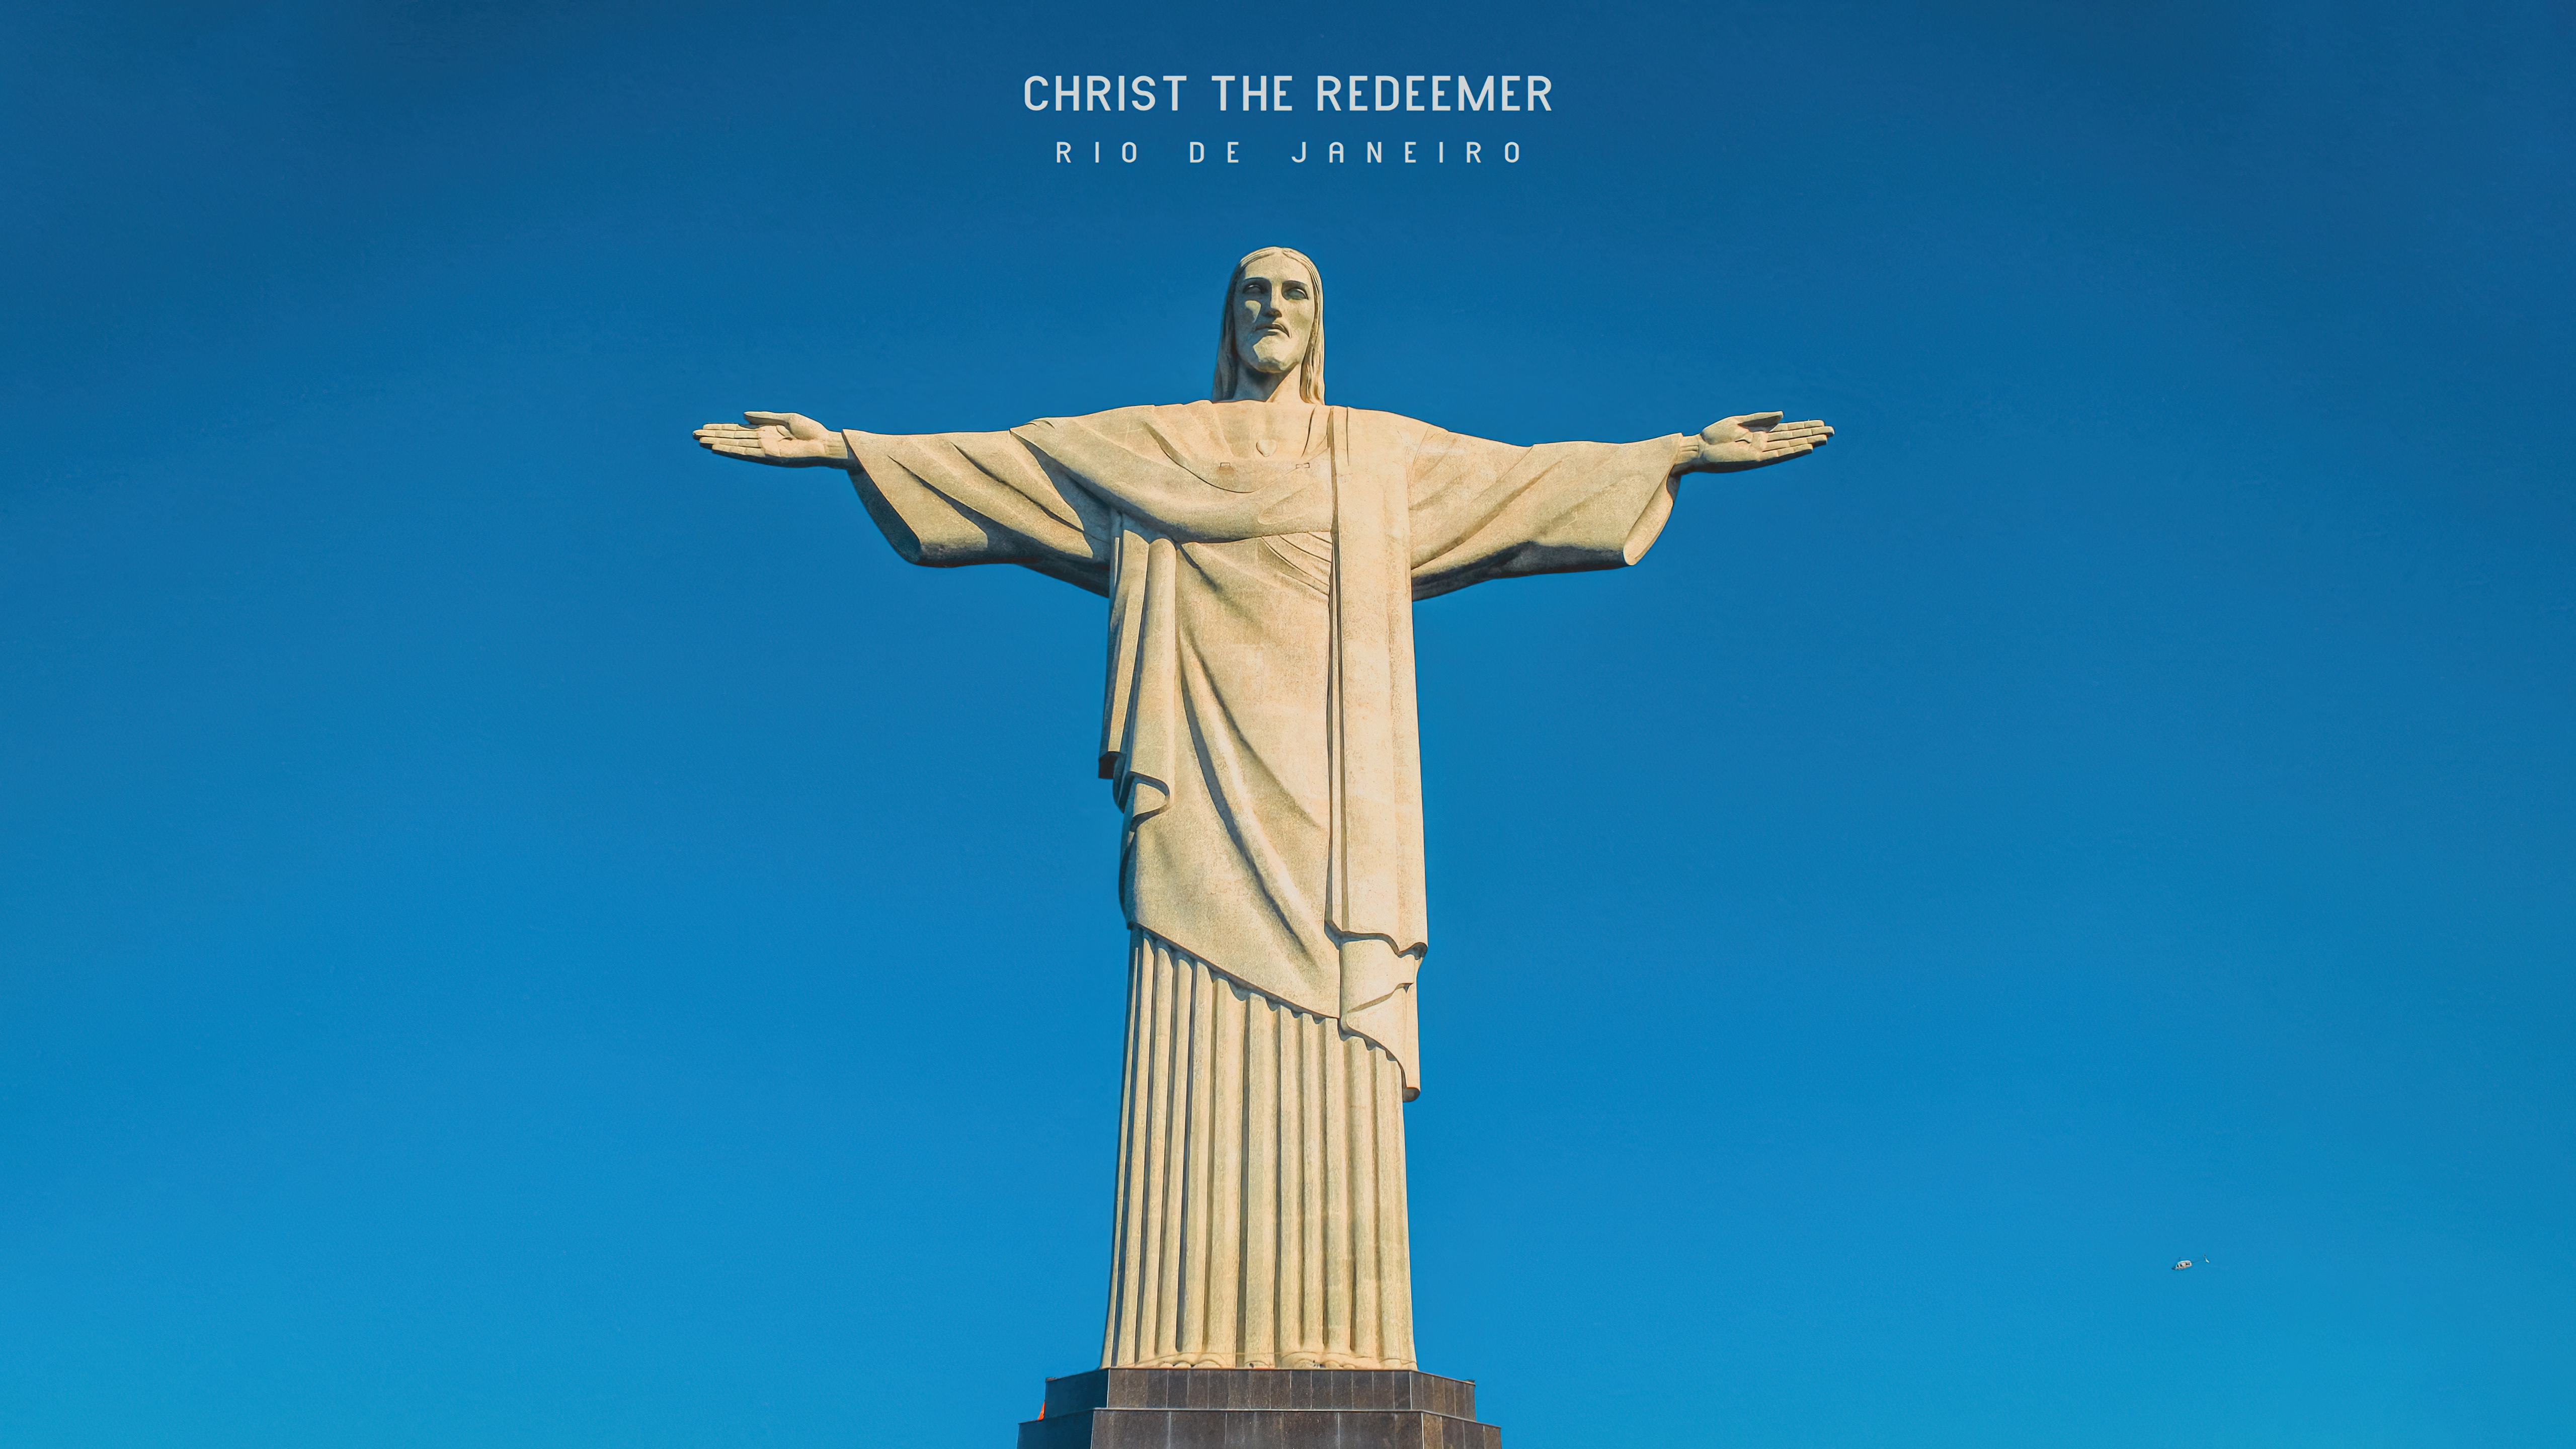 HD wallpaper, Statue, Blue Sky, 5K, Jesus Christ, Rio De Janeiro, Christ The Redeemer, Brazil